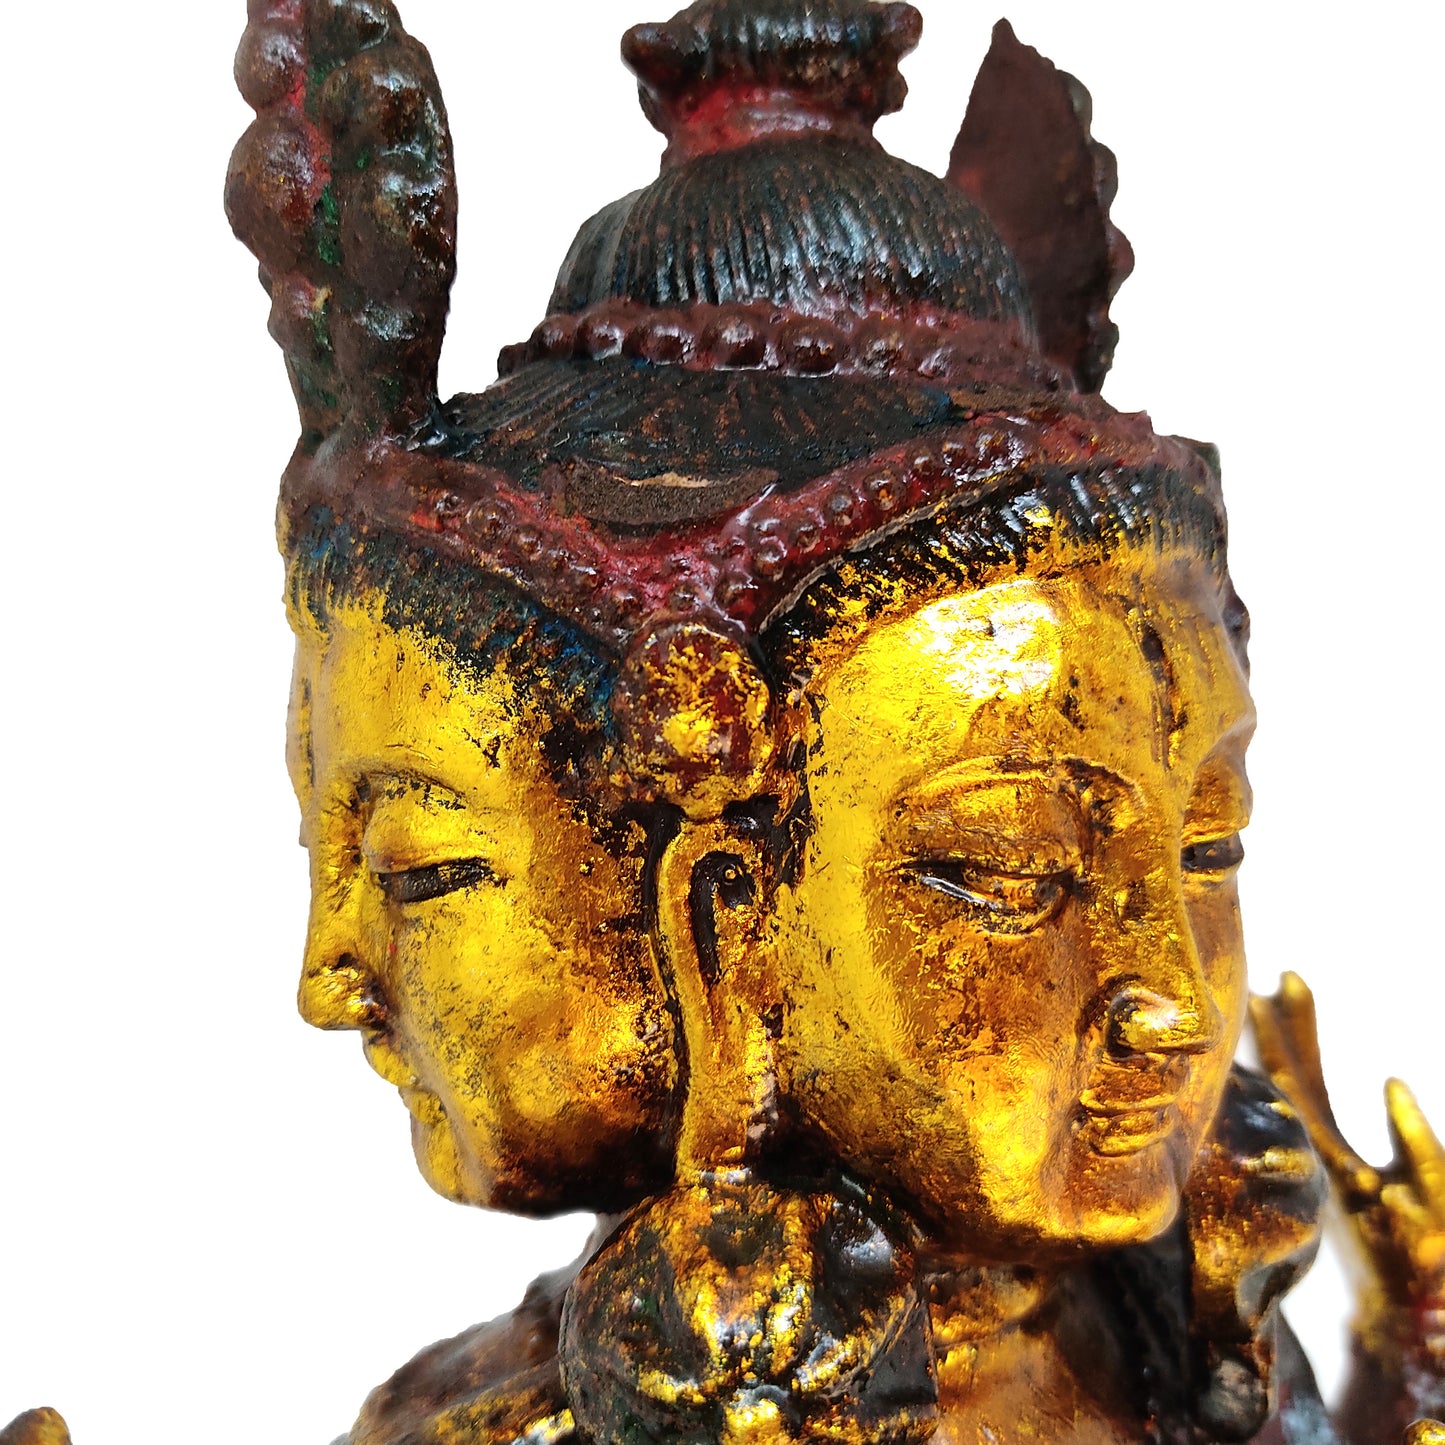 Kwan Yin 4 Heads 8 Arms Large Metal Garden Quan Guan Yin Buddha Statue 15" Tall